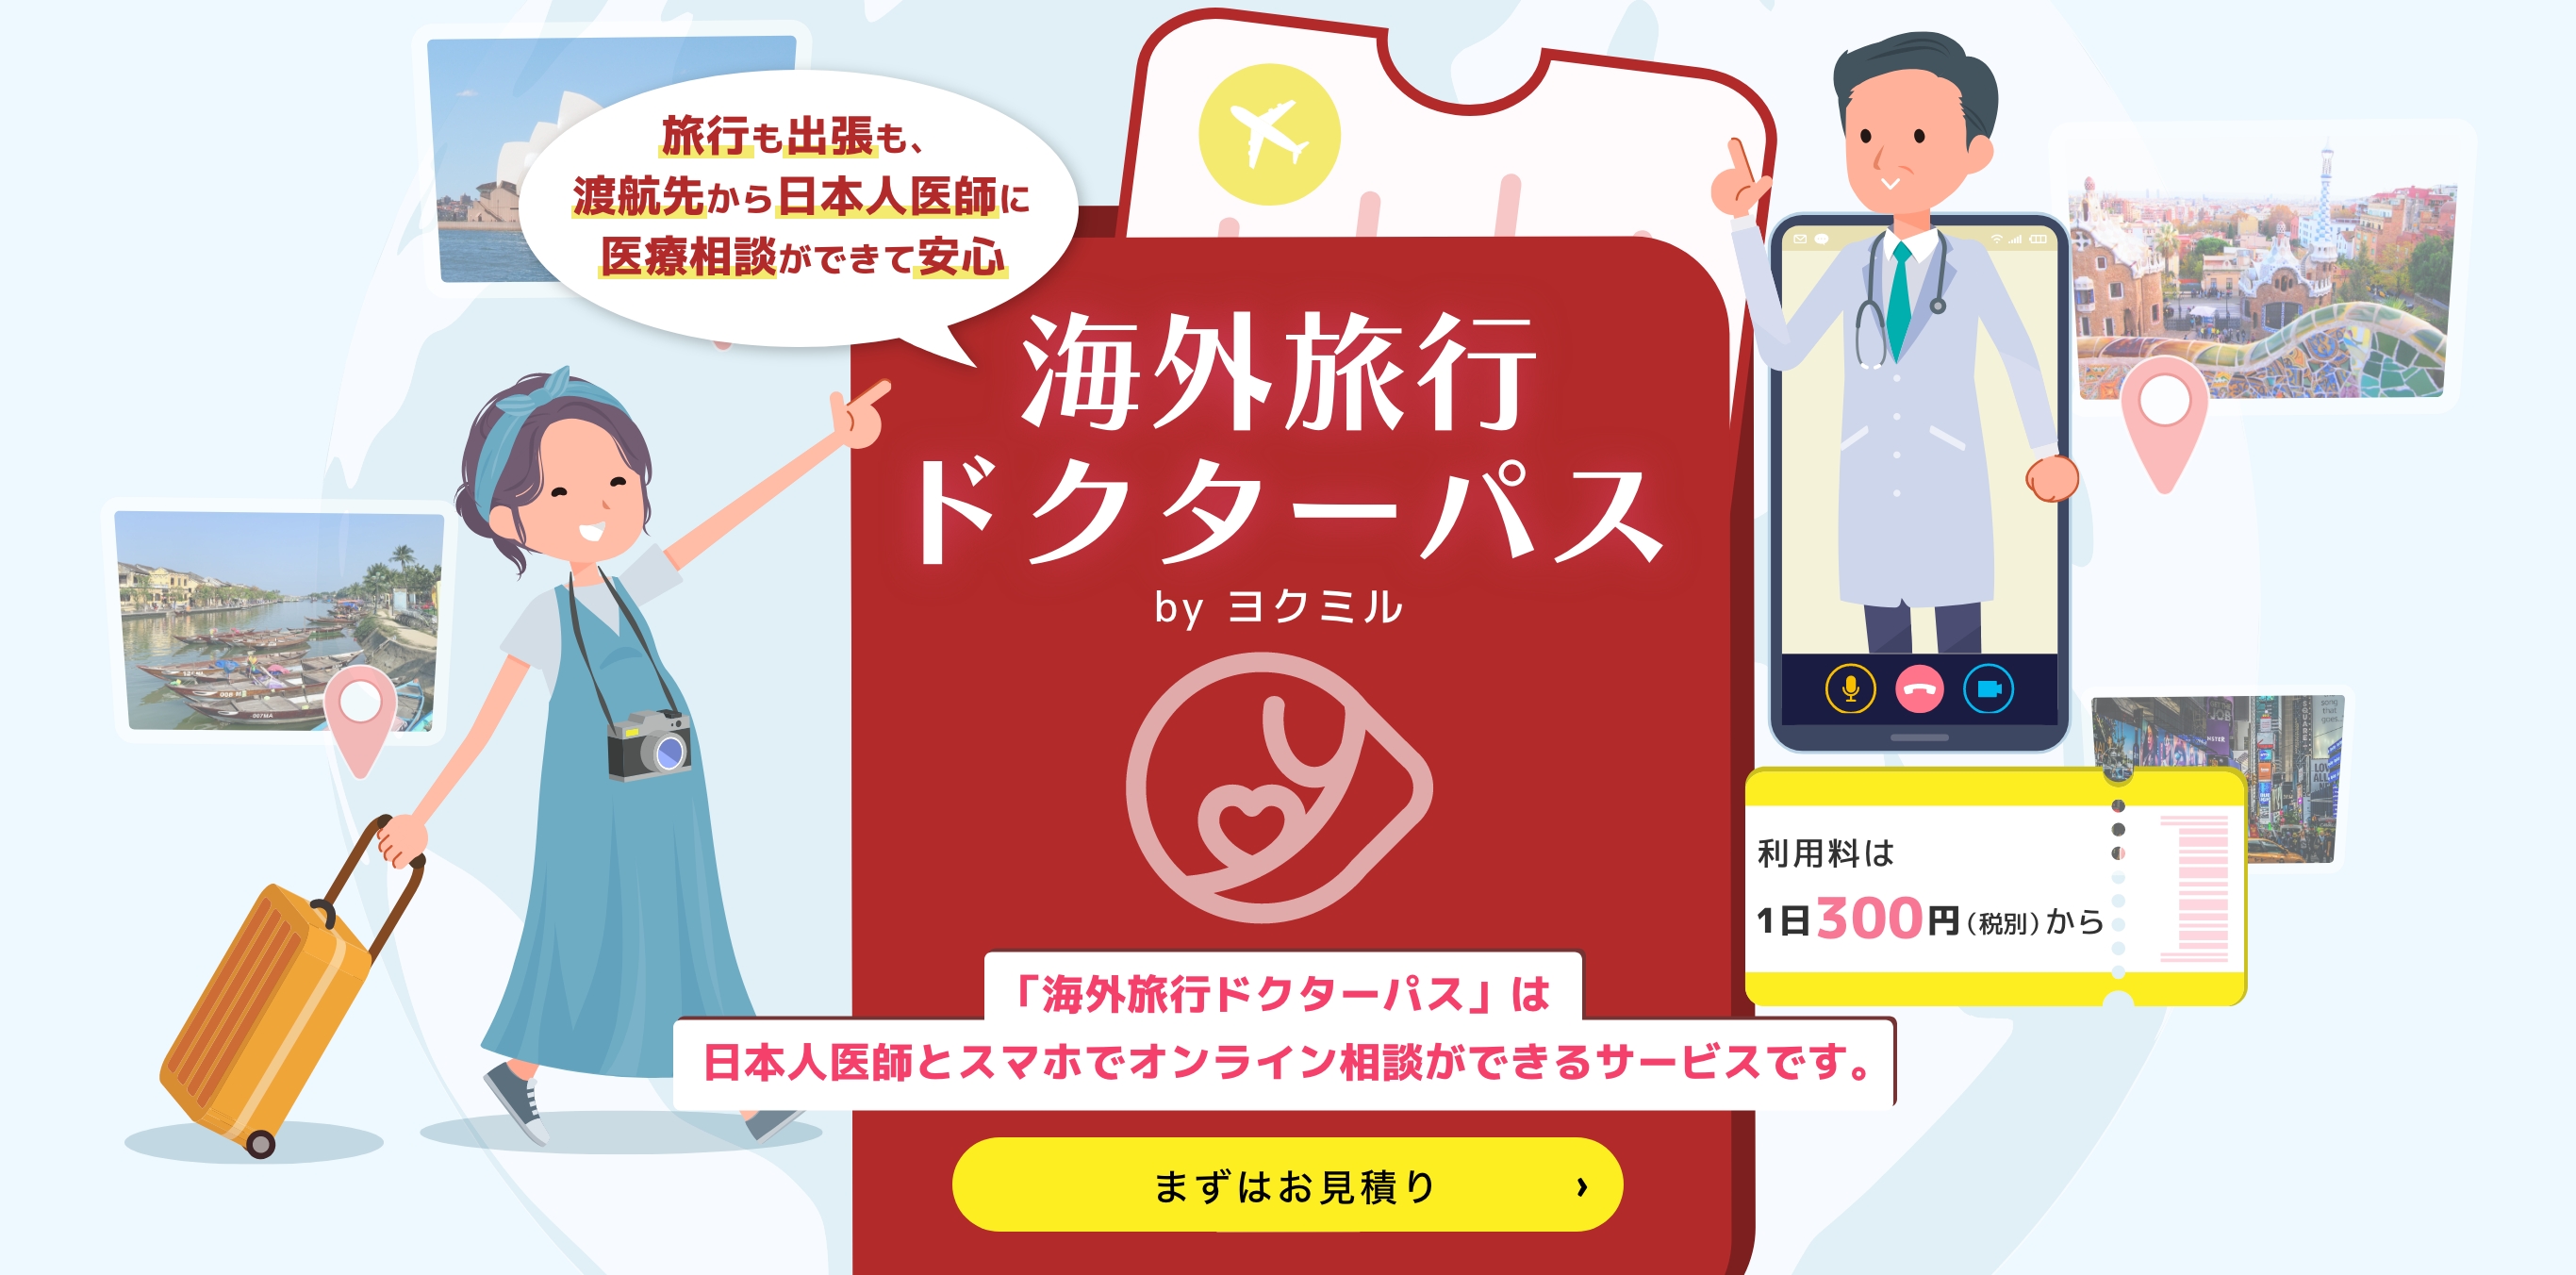 「海外旅行ドクターパス」は日本人医師とスマホでオンライン相談ができるサービスです。